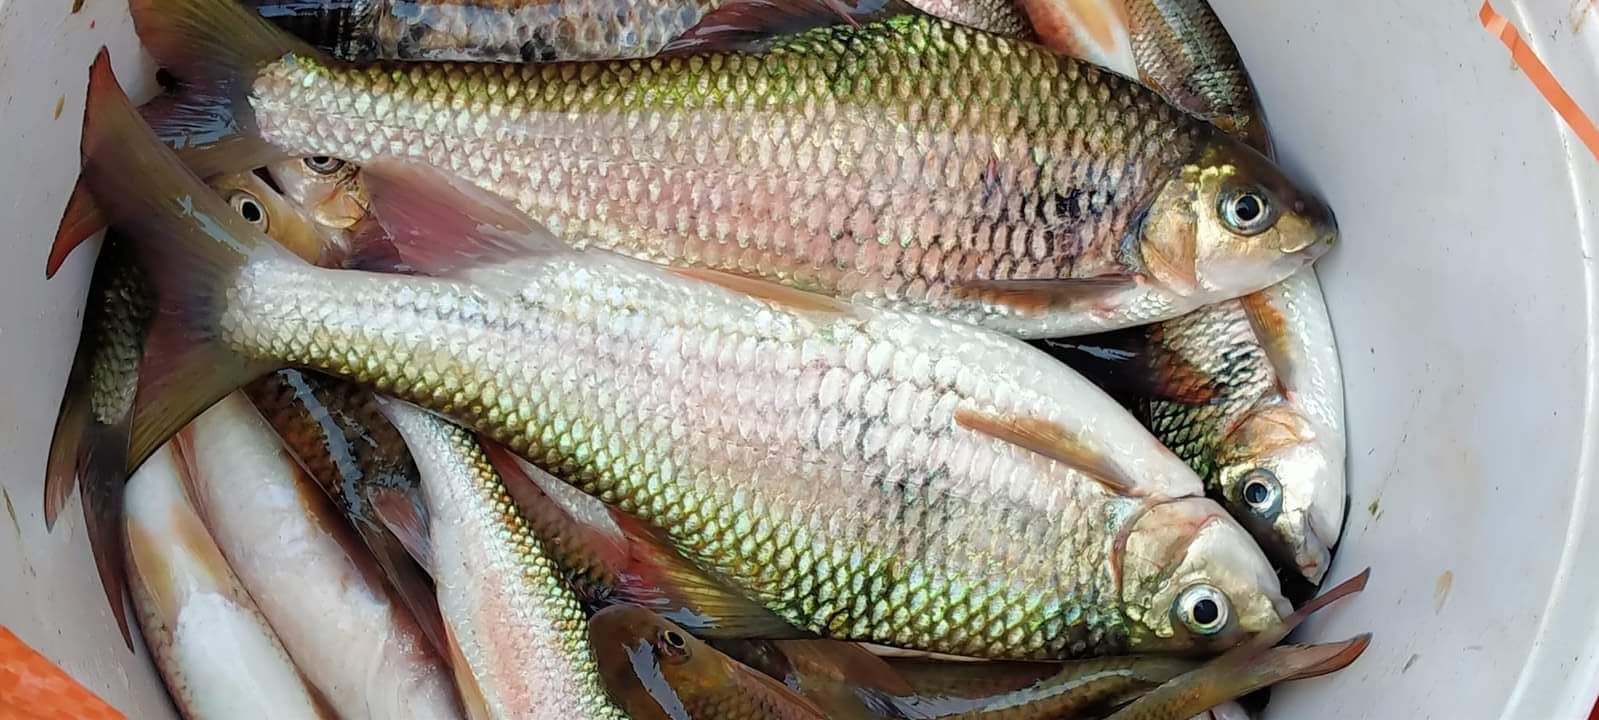 Dòng sông Giăng nổi tiếng Nghệ An có loài cá còn nổi tiếng hơn, ăn như tẩm bổ, lợi tiêu hóa, giúp sáng mắt - Ảnh 3.